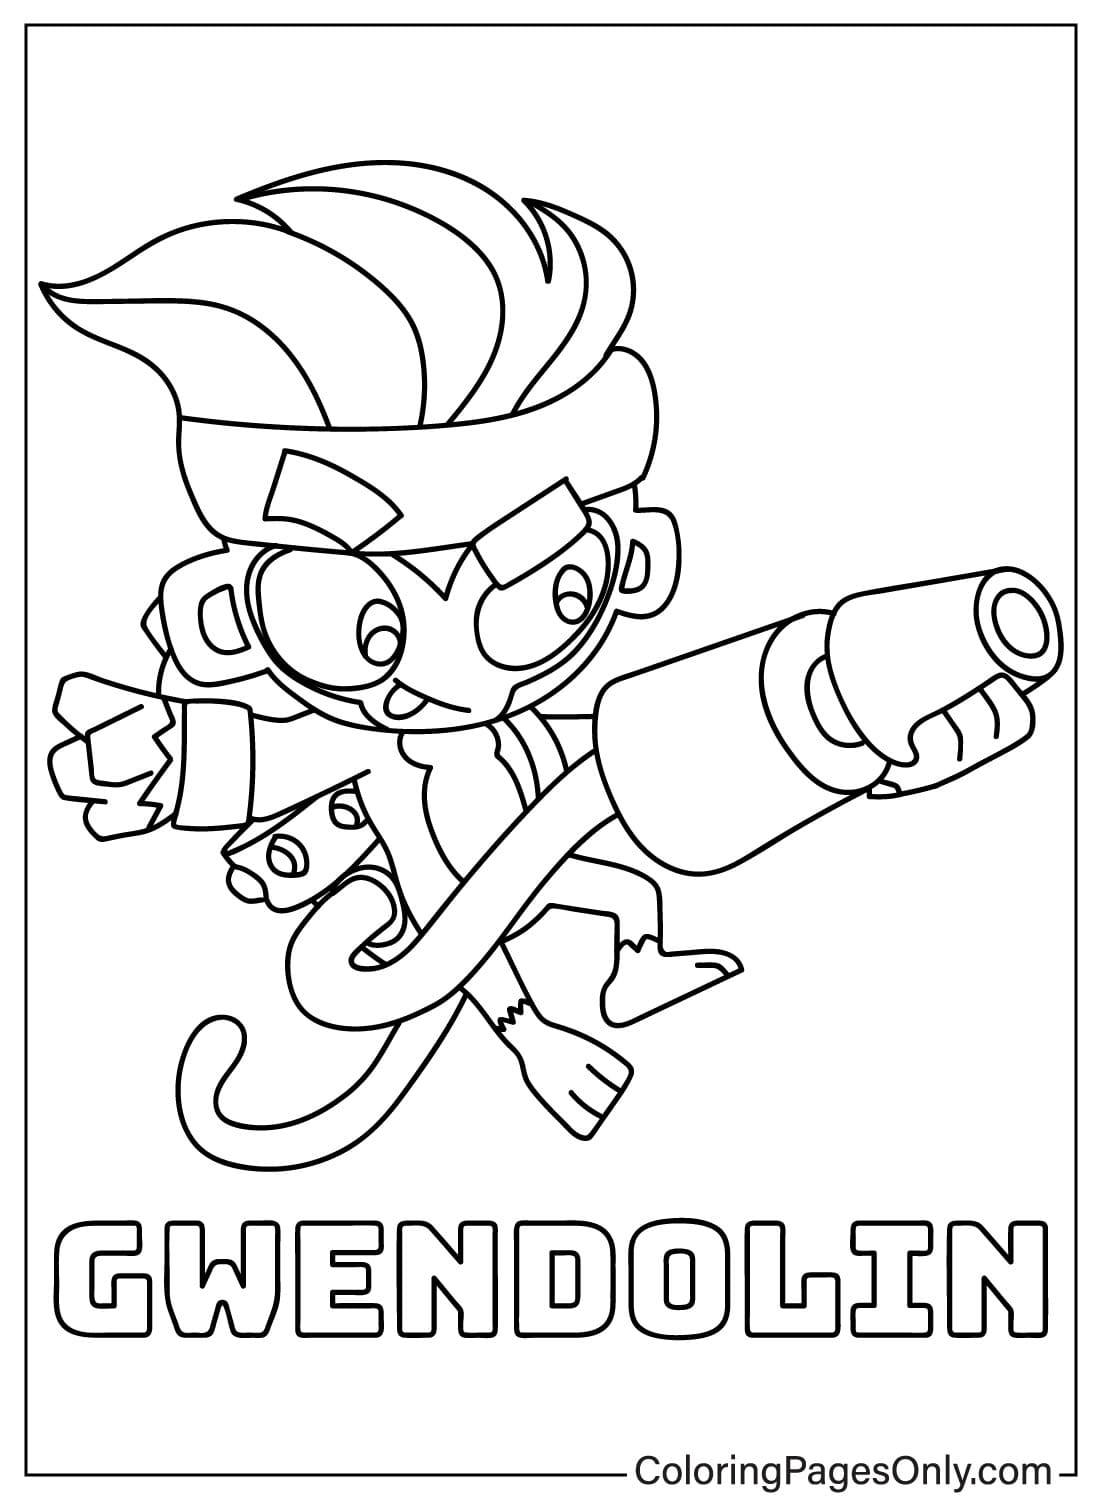 Página para colorear de Gwendolin para imprimir gratis de Gwendolin